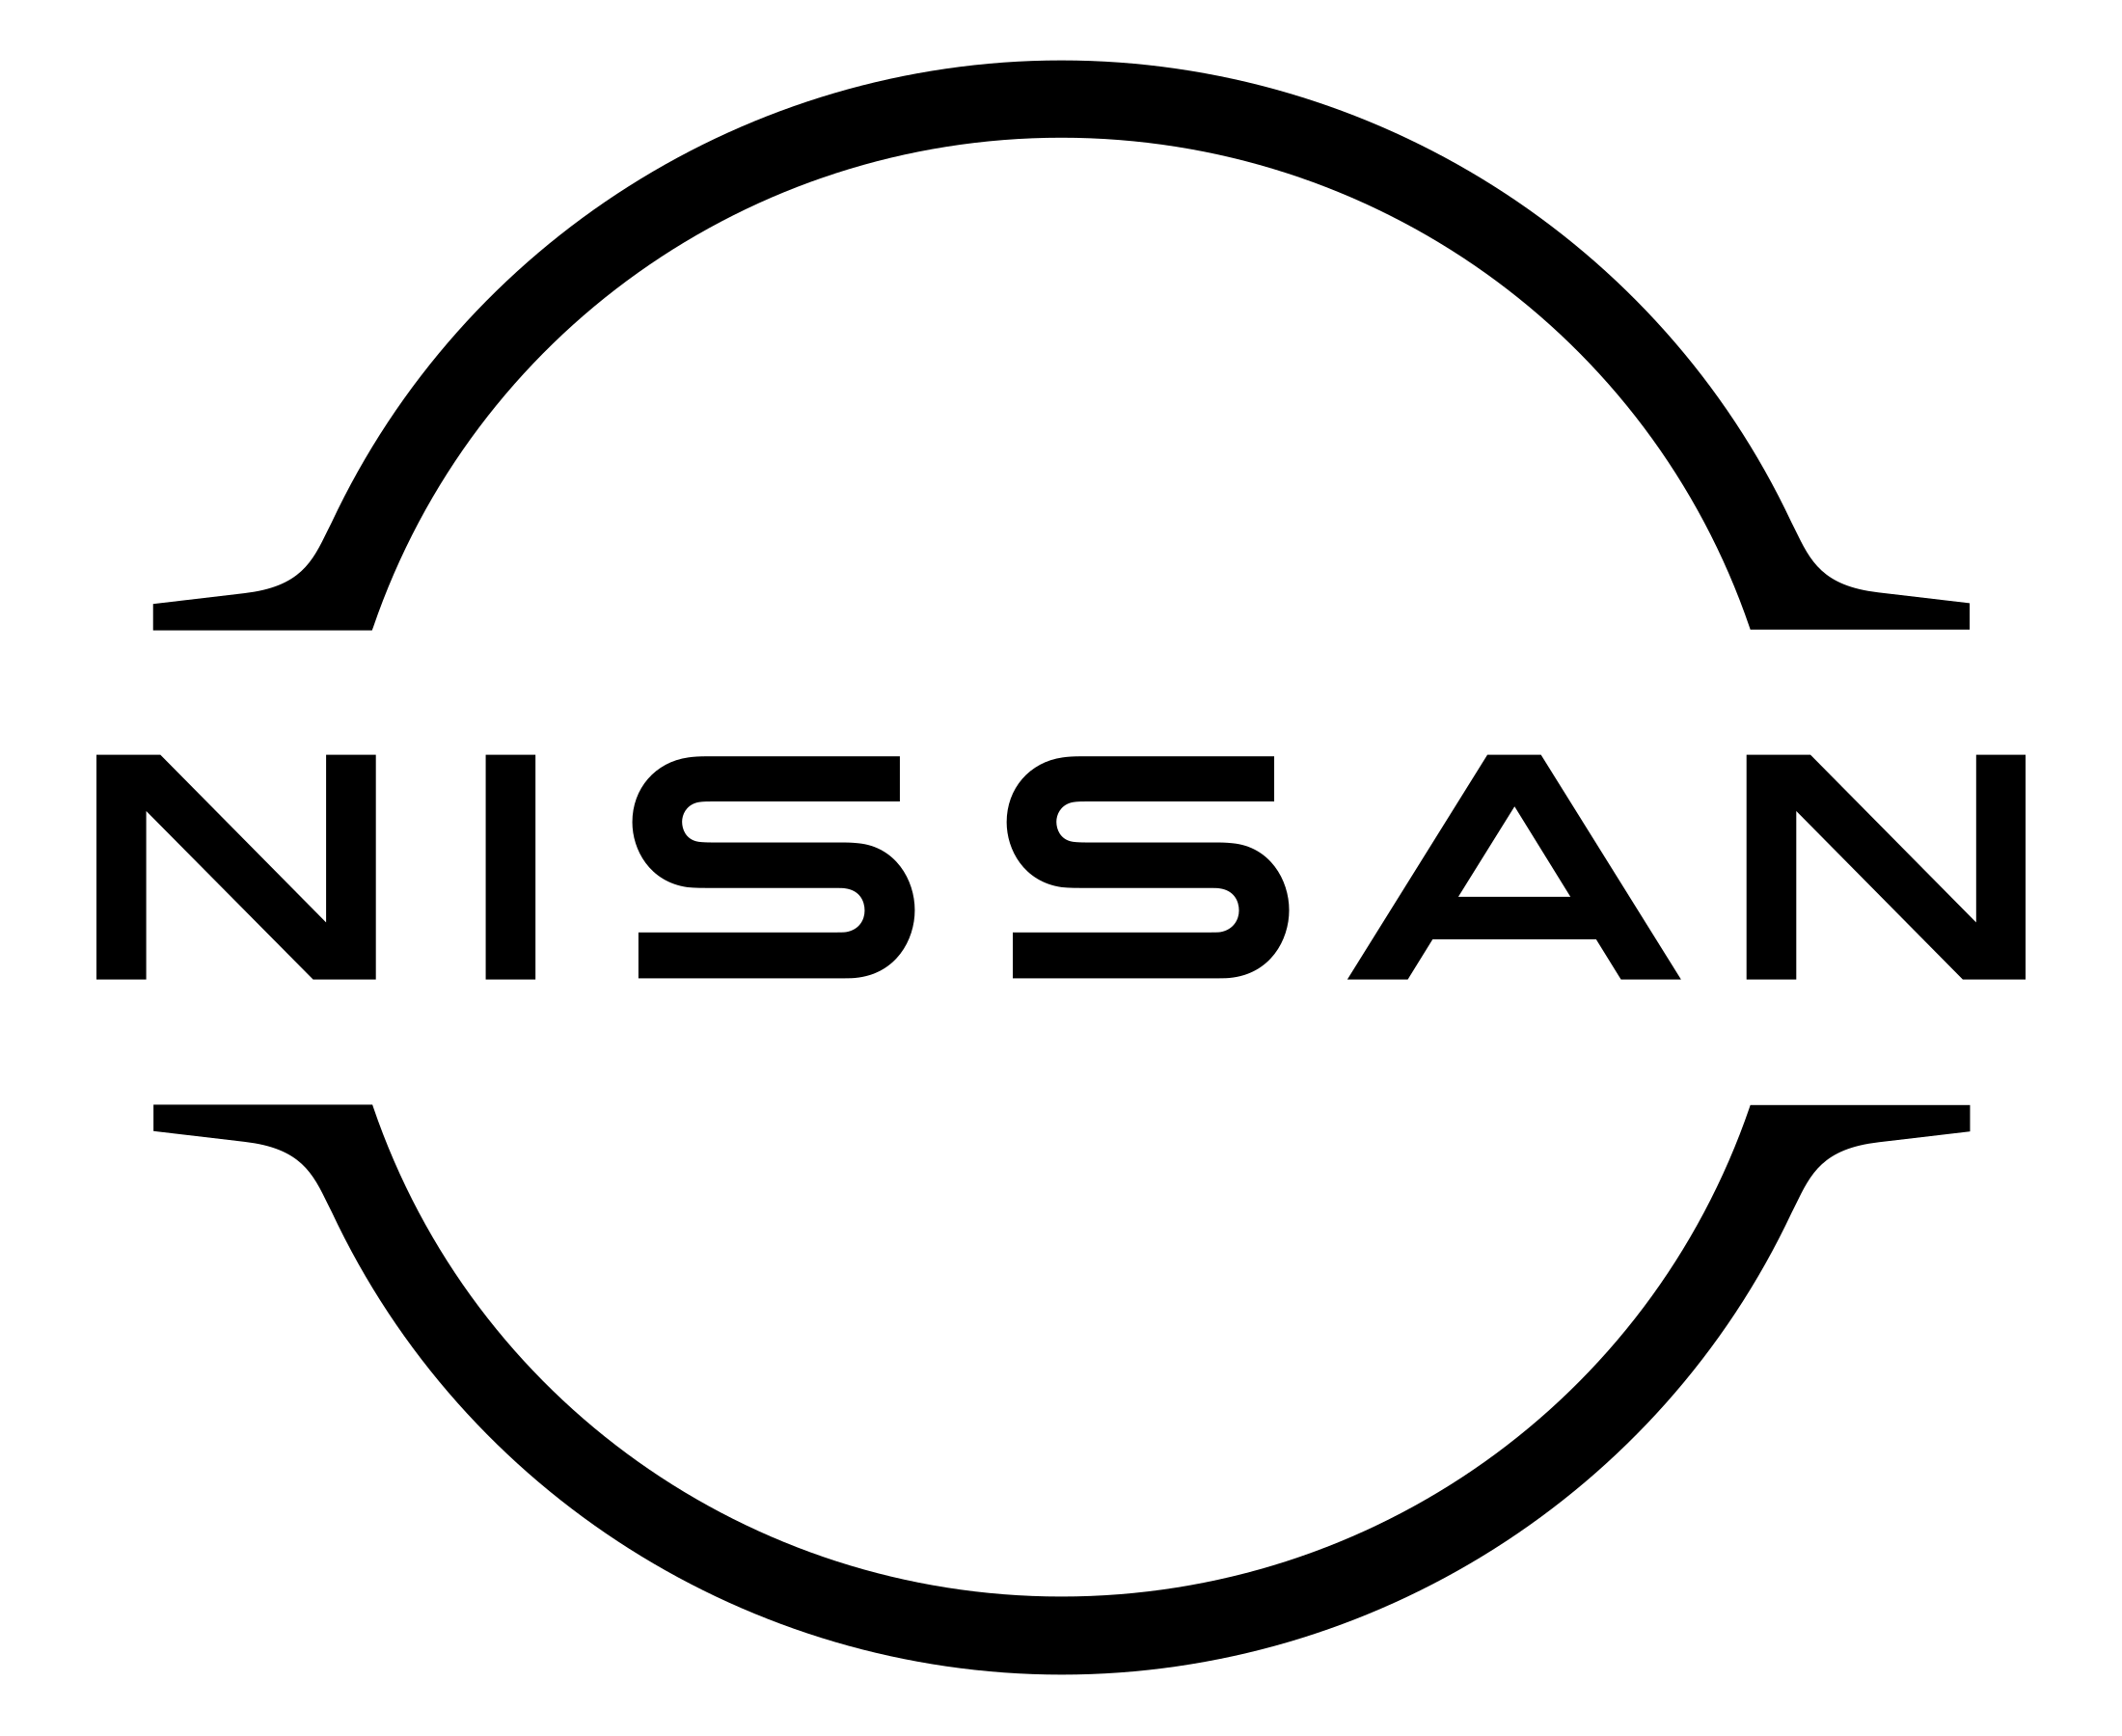 nissan-logo-2020-black.png